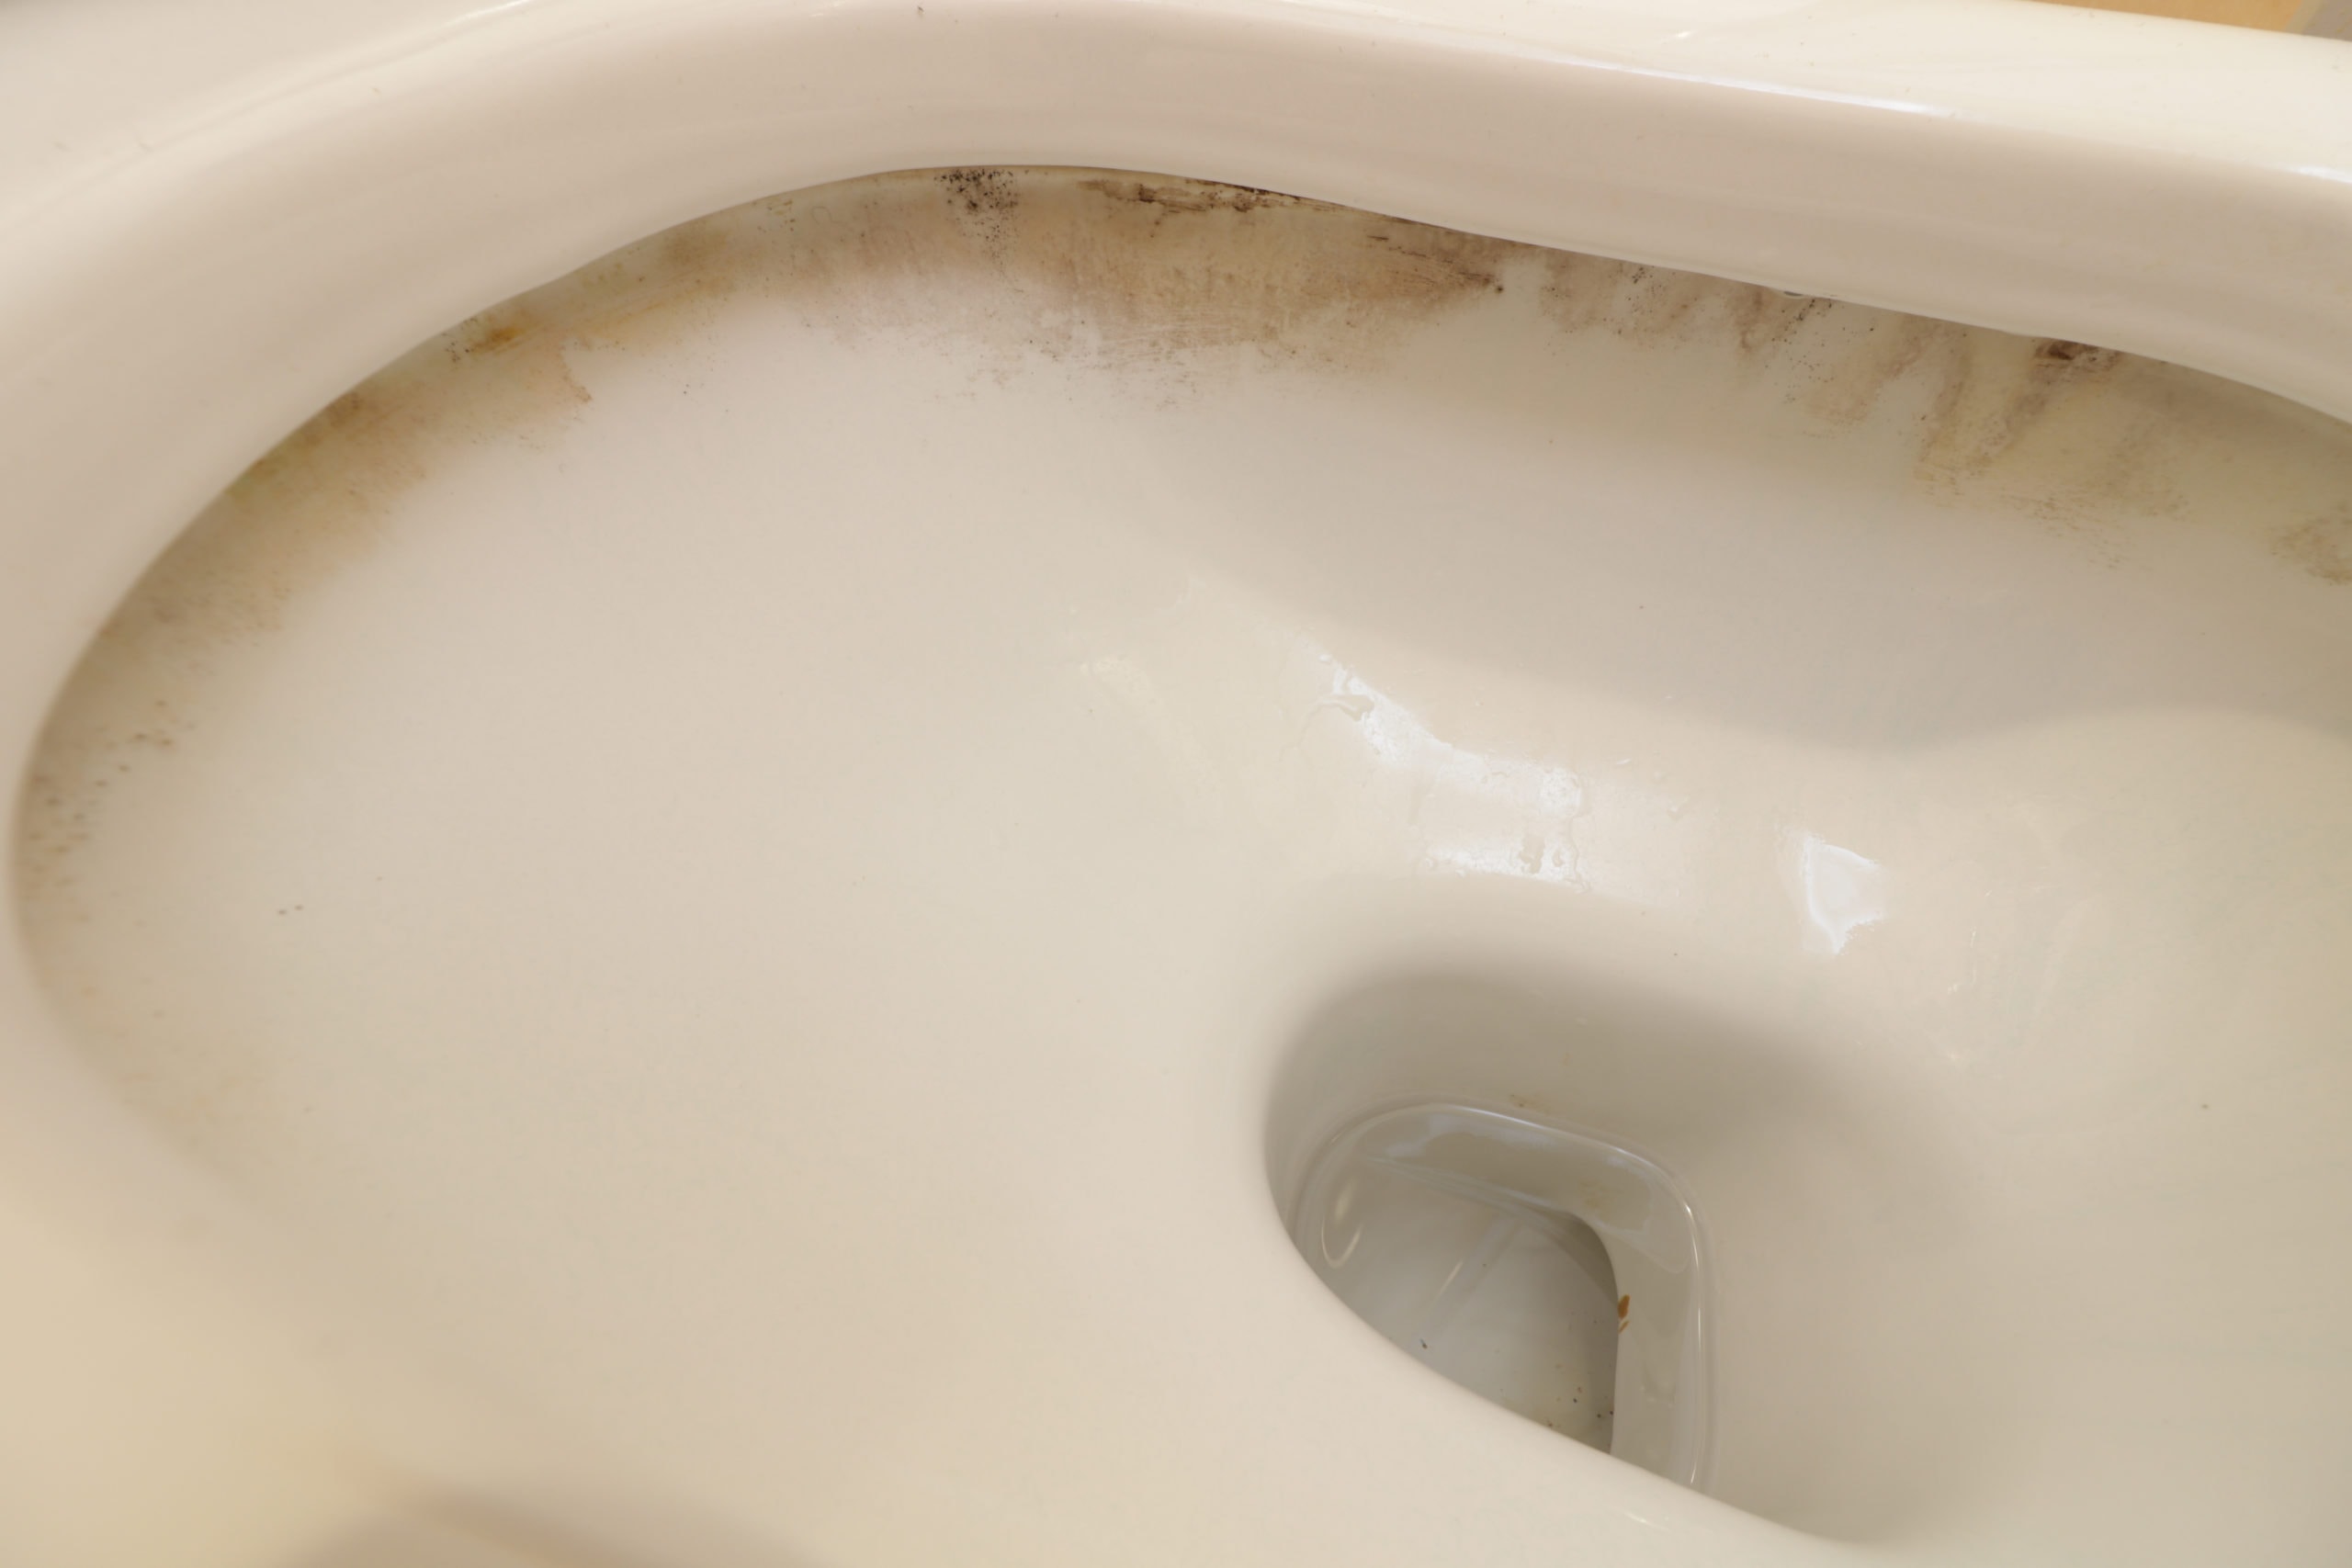 Dirty limescale below toilet rim